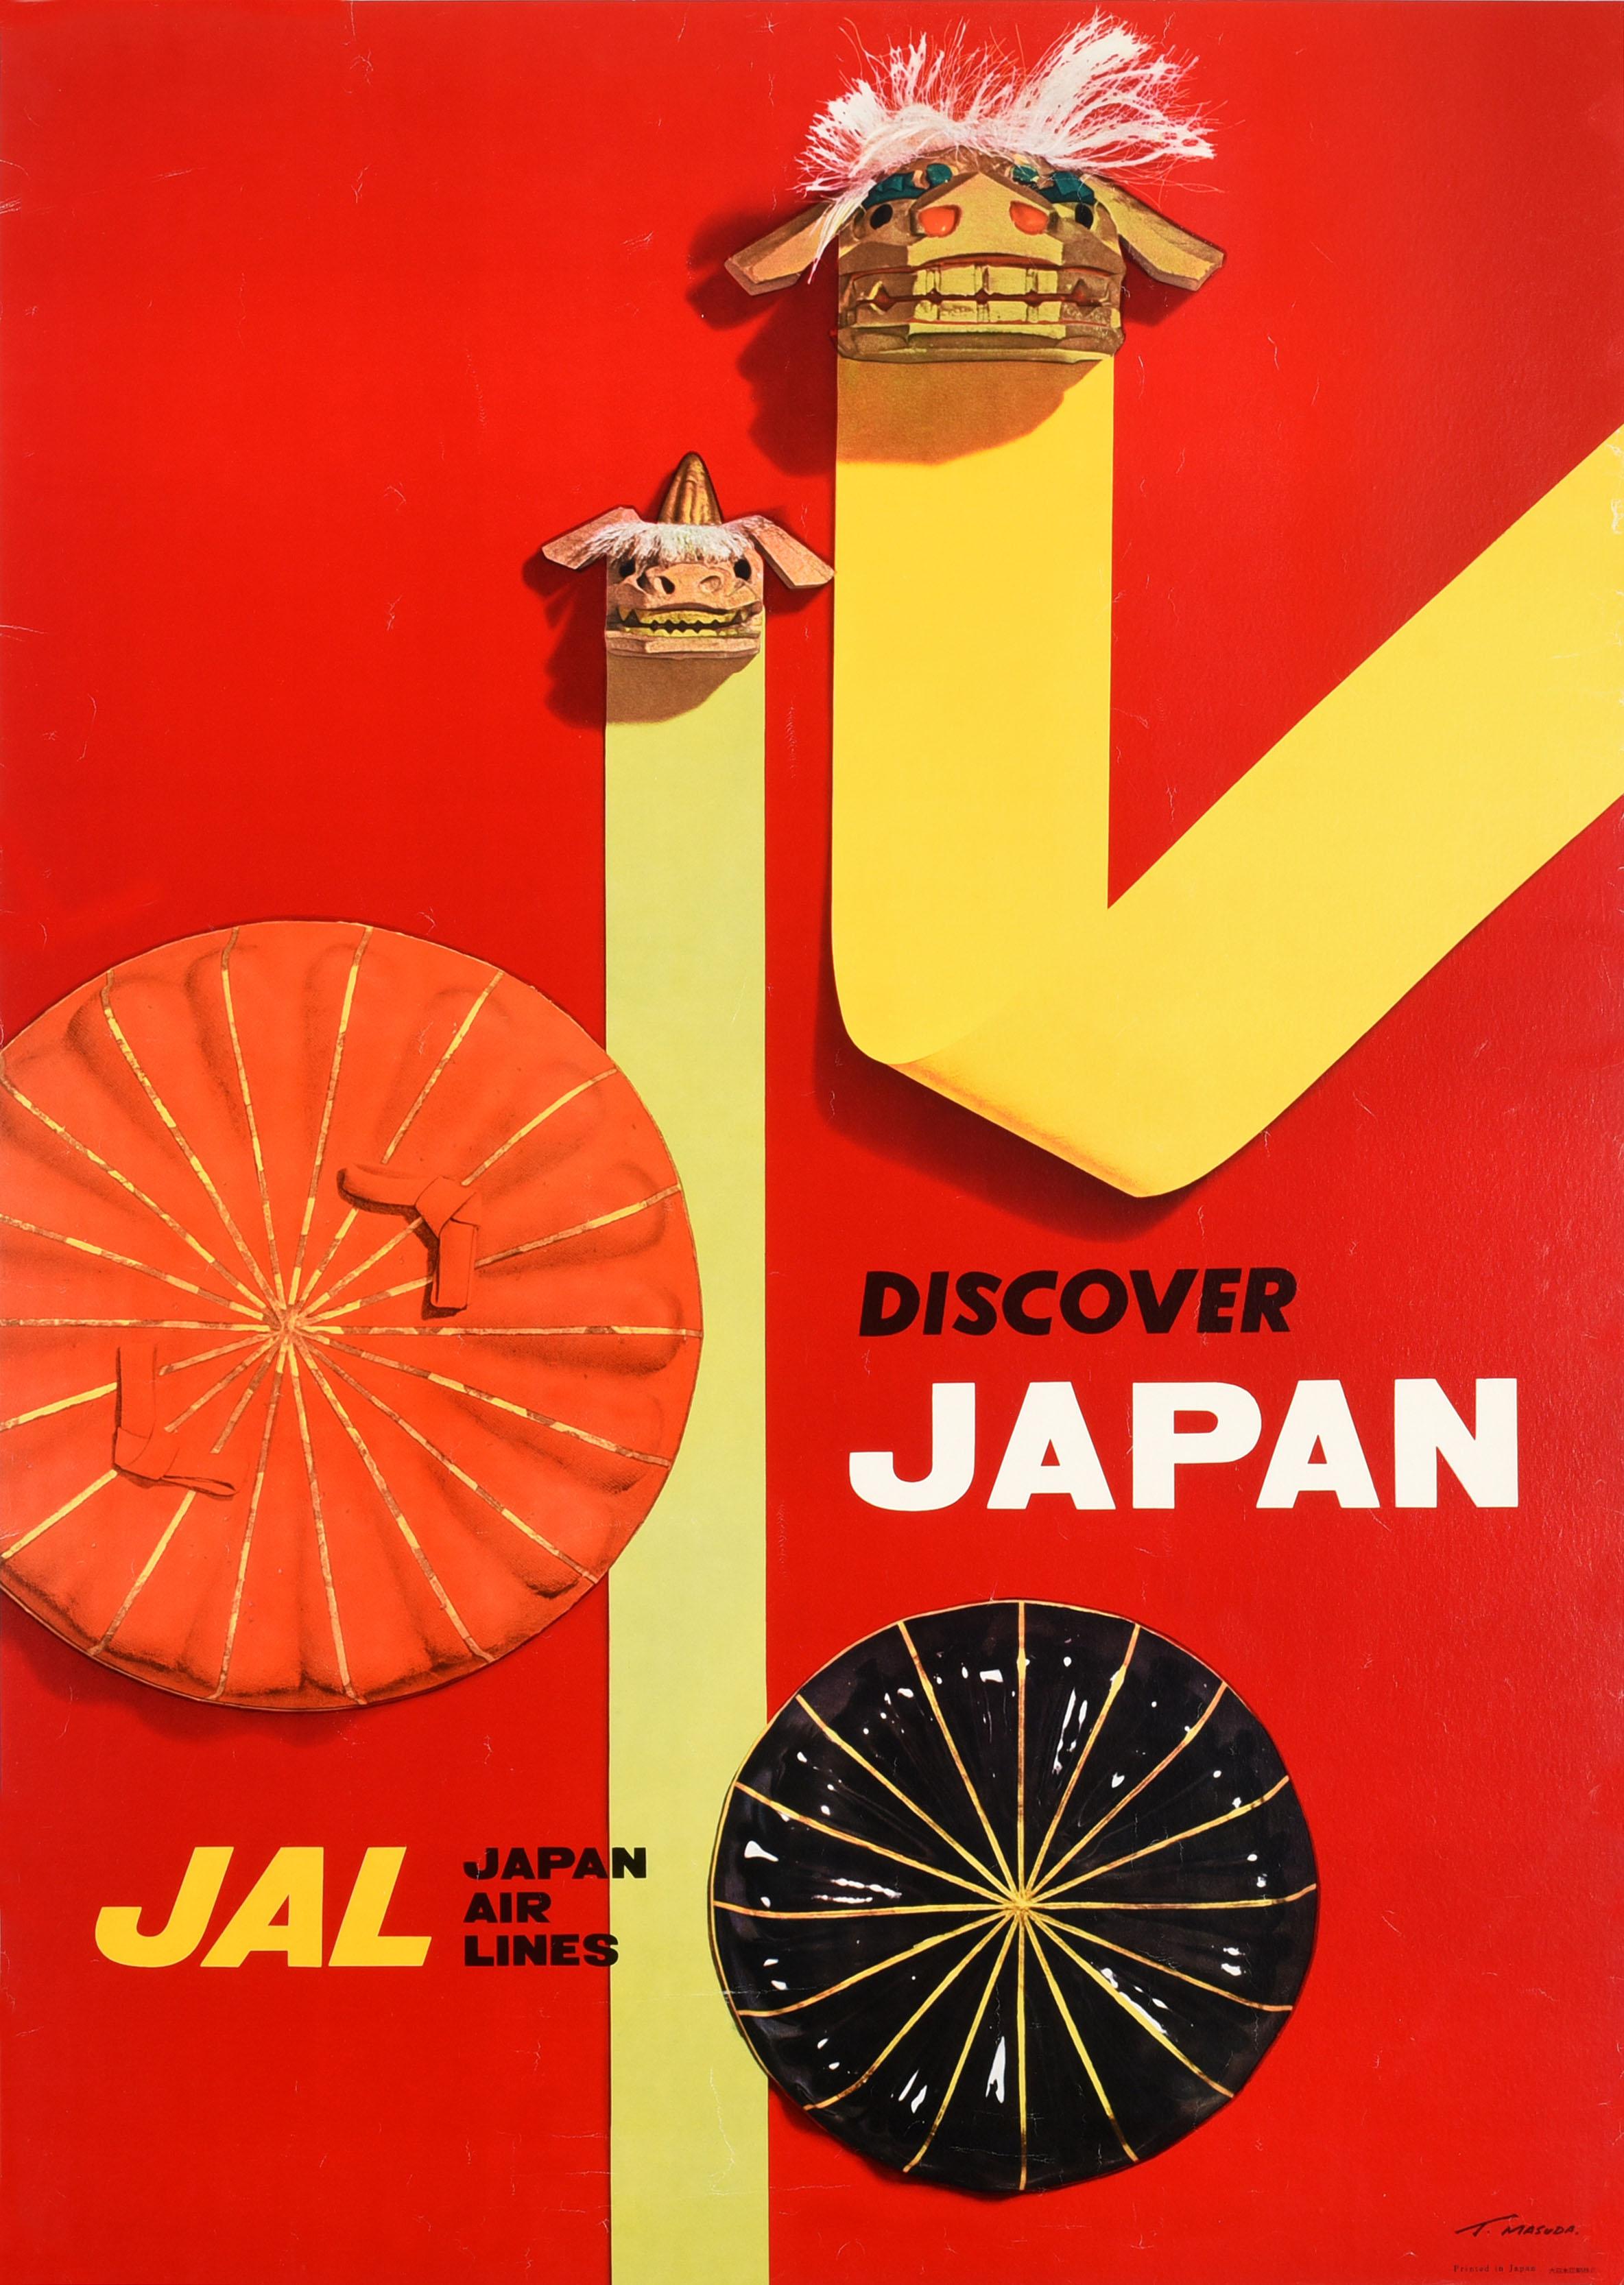 T. Masuda  Print - Original Vintage Poster Japan Airlines JAL Discover Japan Travel Lion Dog Design